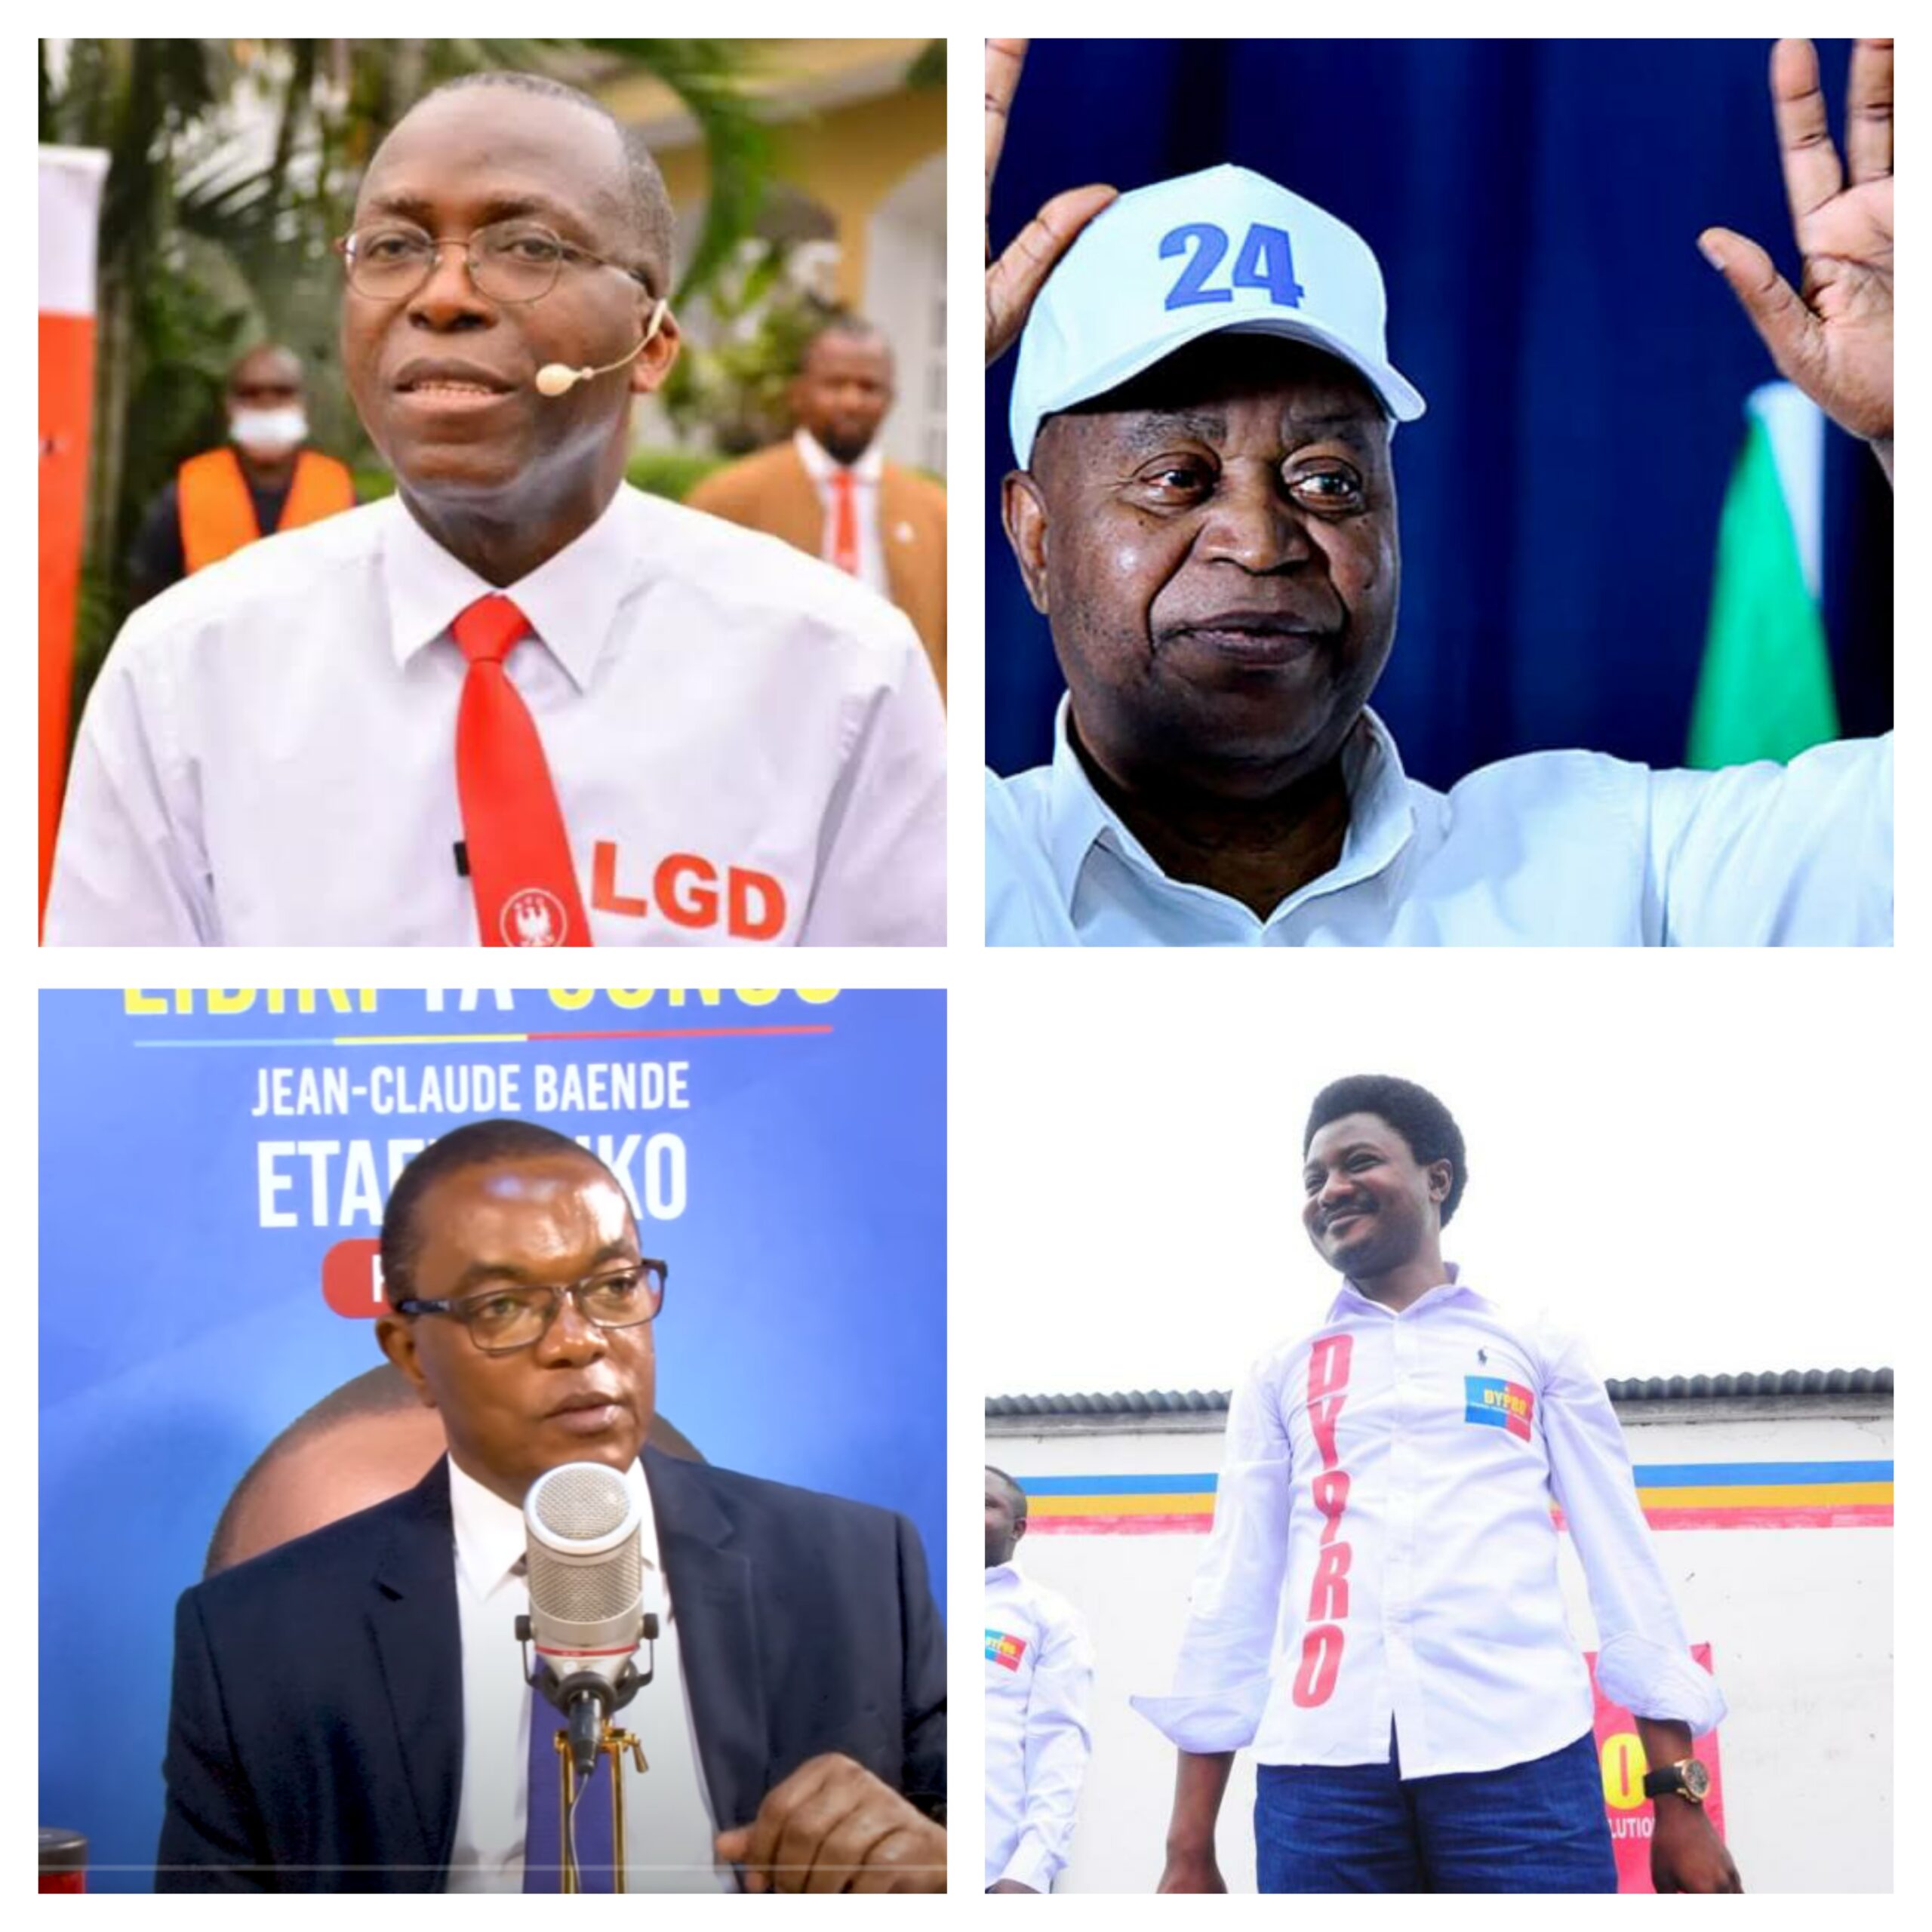 Quatre candidats malheureux à la présidentielle: Matata Ponyo, Adolphe Muzito, J.C Baende, Constant Mutamba se positionnent à l’Assemblée nationale.